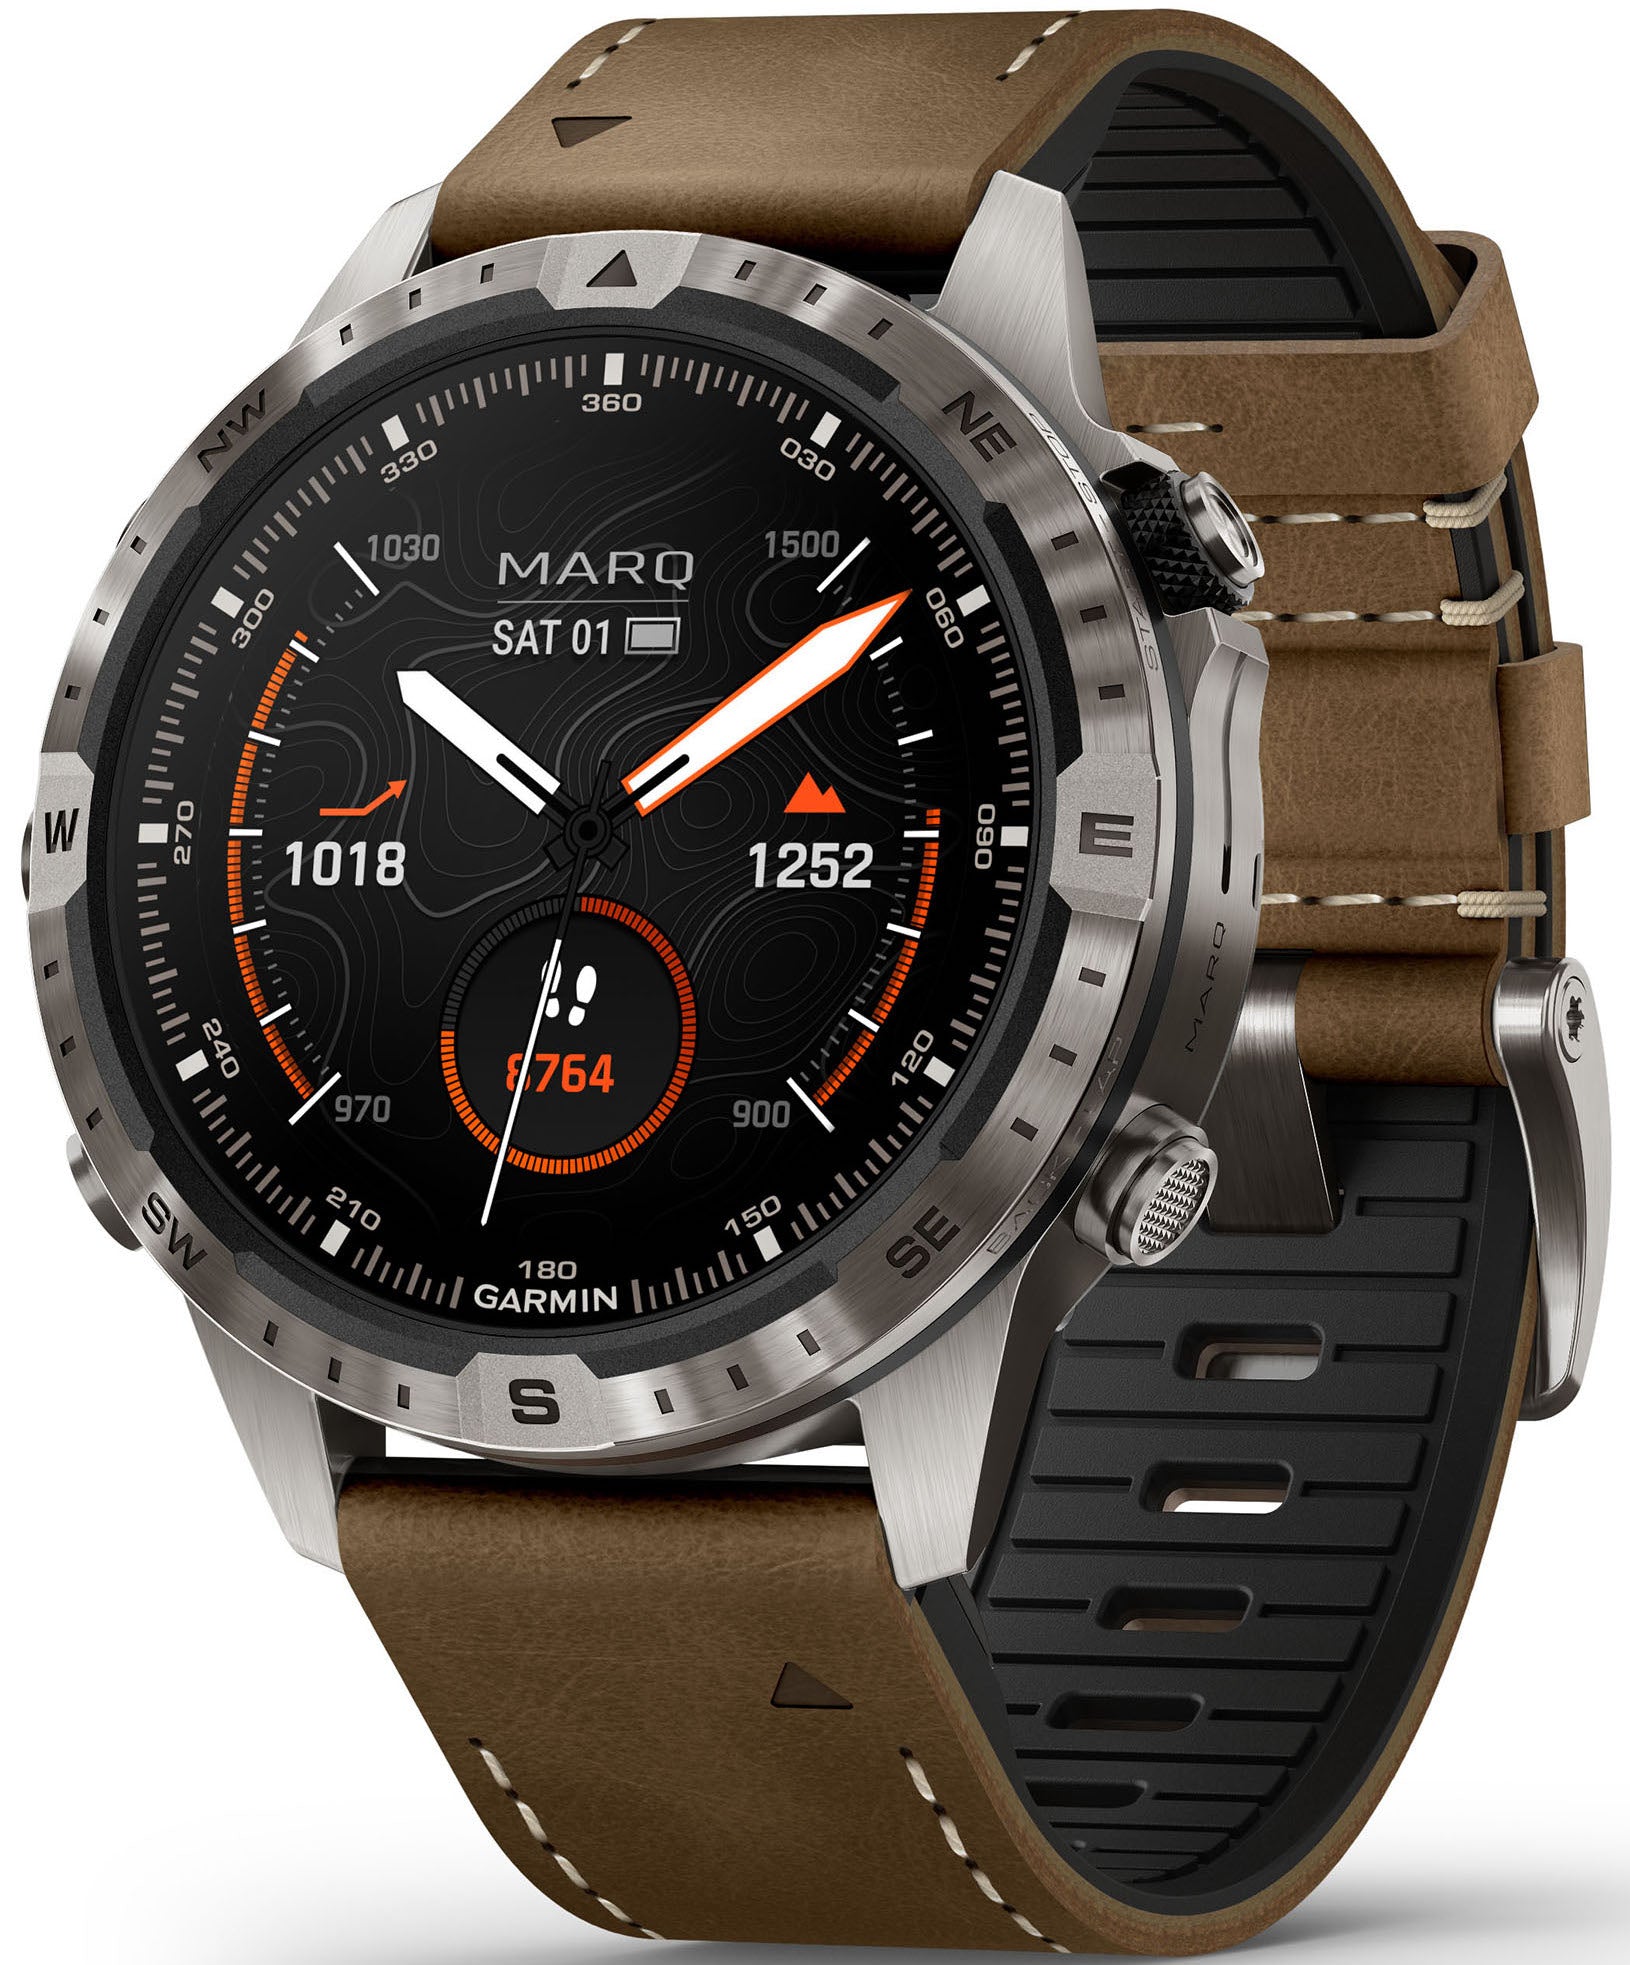 Photos - Smartwatches Garmin MARQ II Watch Adventurer GMN-340 